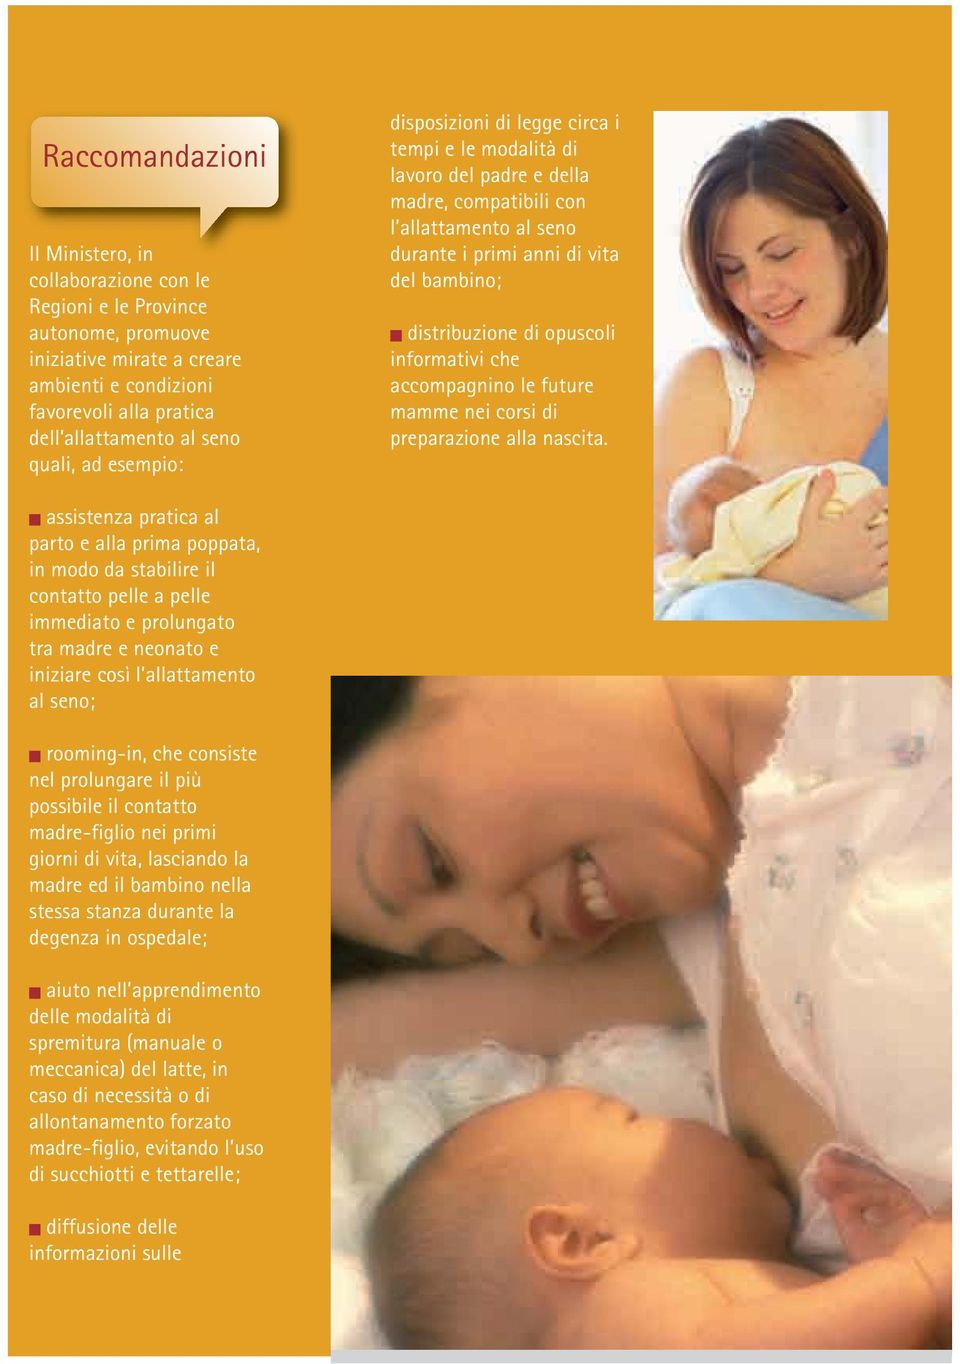 di opuscoli informativi che accompagnino le future mamme nei corsi di preparazione alla nascita.